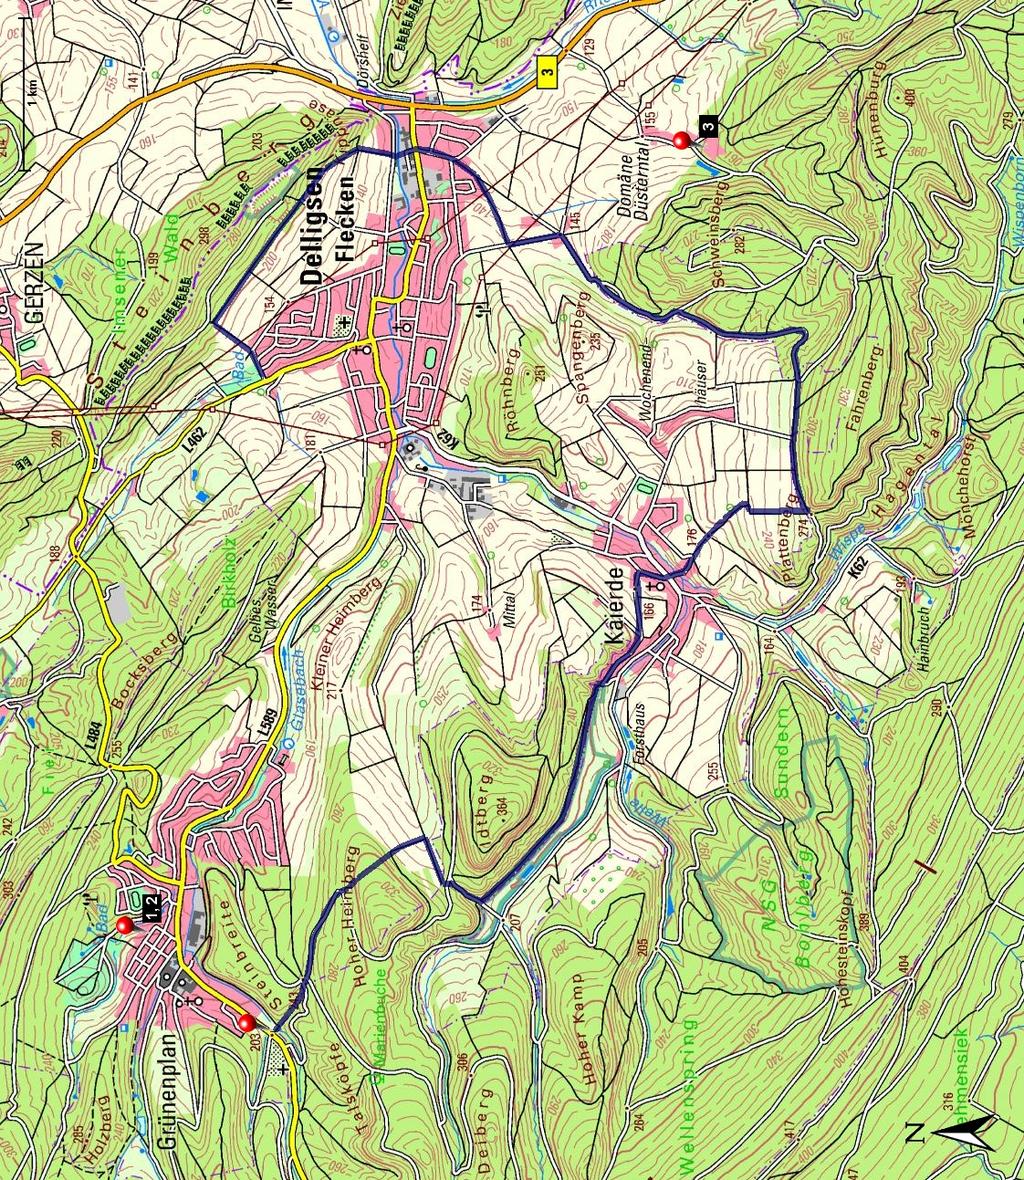 Länge: Start: Grünenplan, Obere Hilsstraße, Infotafel, Wanderparkplatz Steigung: + 748 m / - 789 m 13,10 km Verlauf: